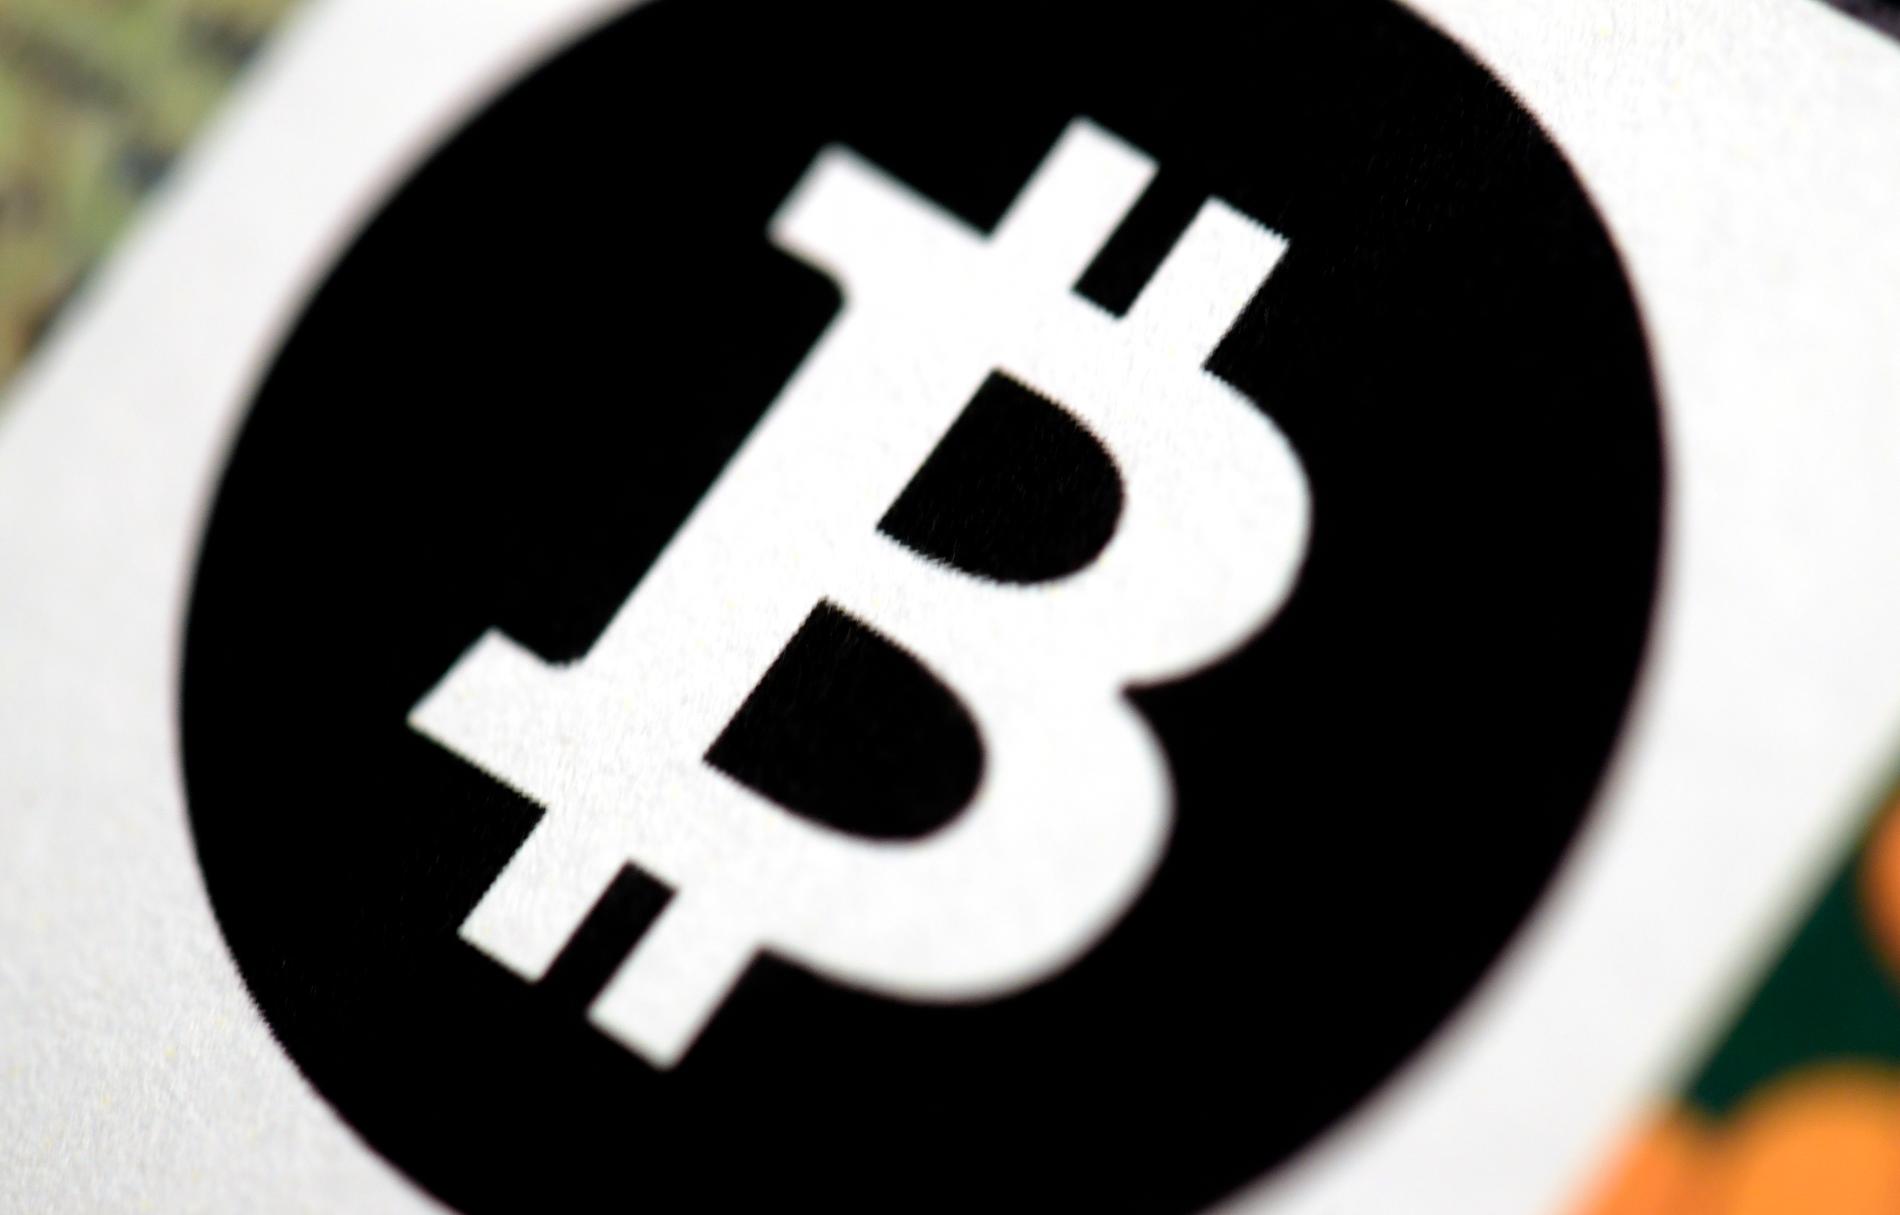 Den digitala kryptovalutan bitcoin uppfanns 2009 av Satoshi Nakamoto, en pseudonym vars identitet aldrig har avslöjats. Arkivbild.